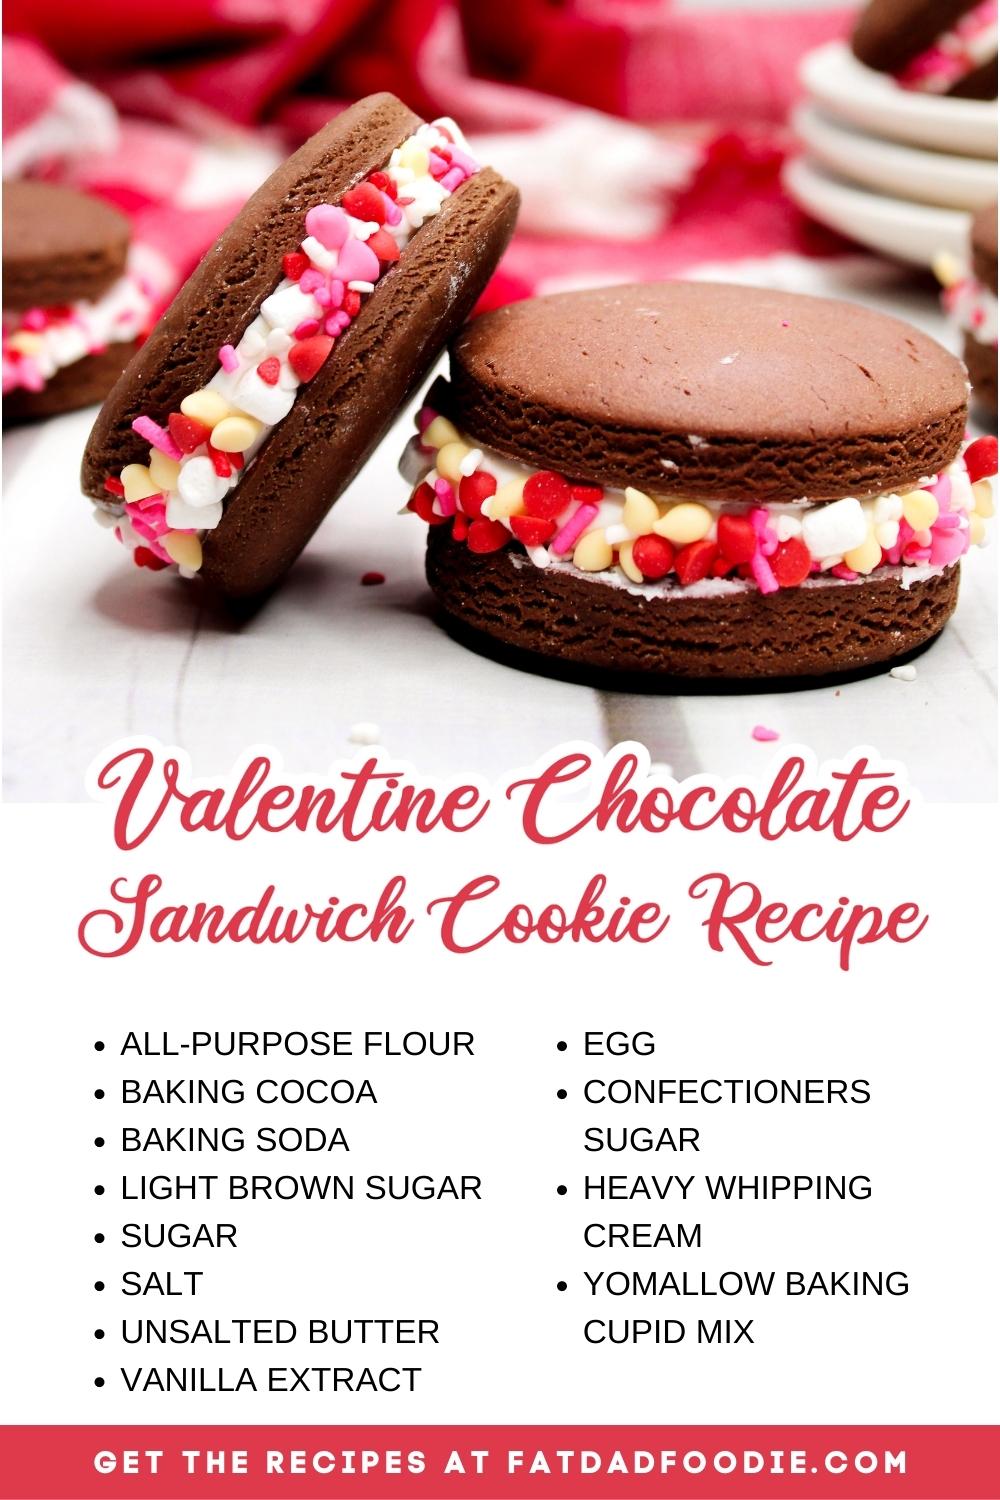 Valentine Chocolate Sandwich Cookie Recipe ingredients list